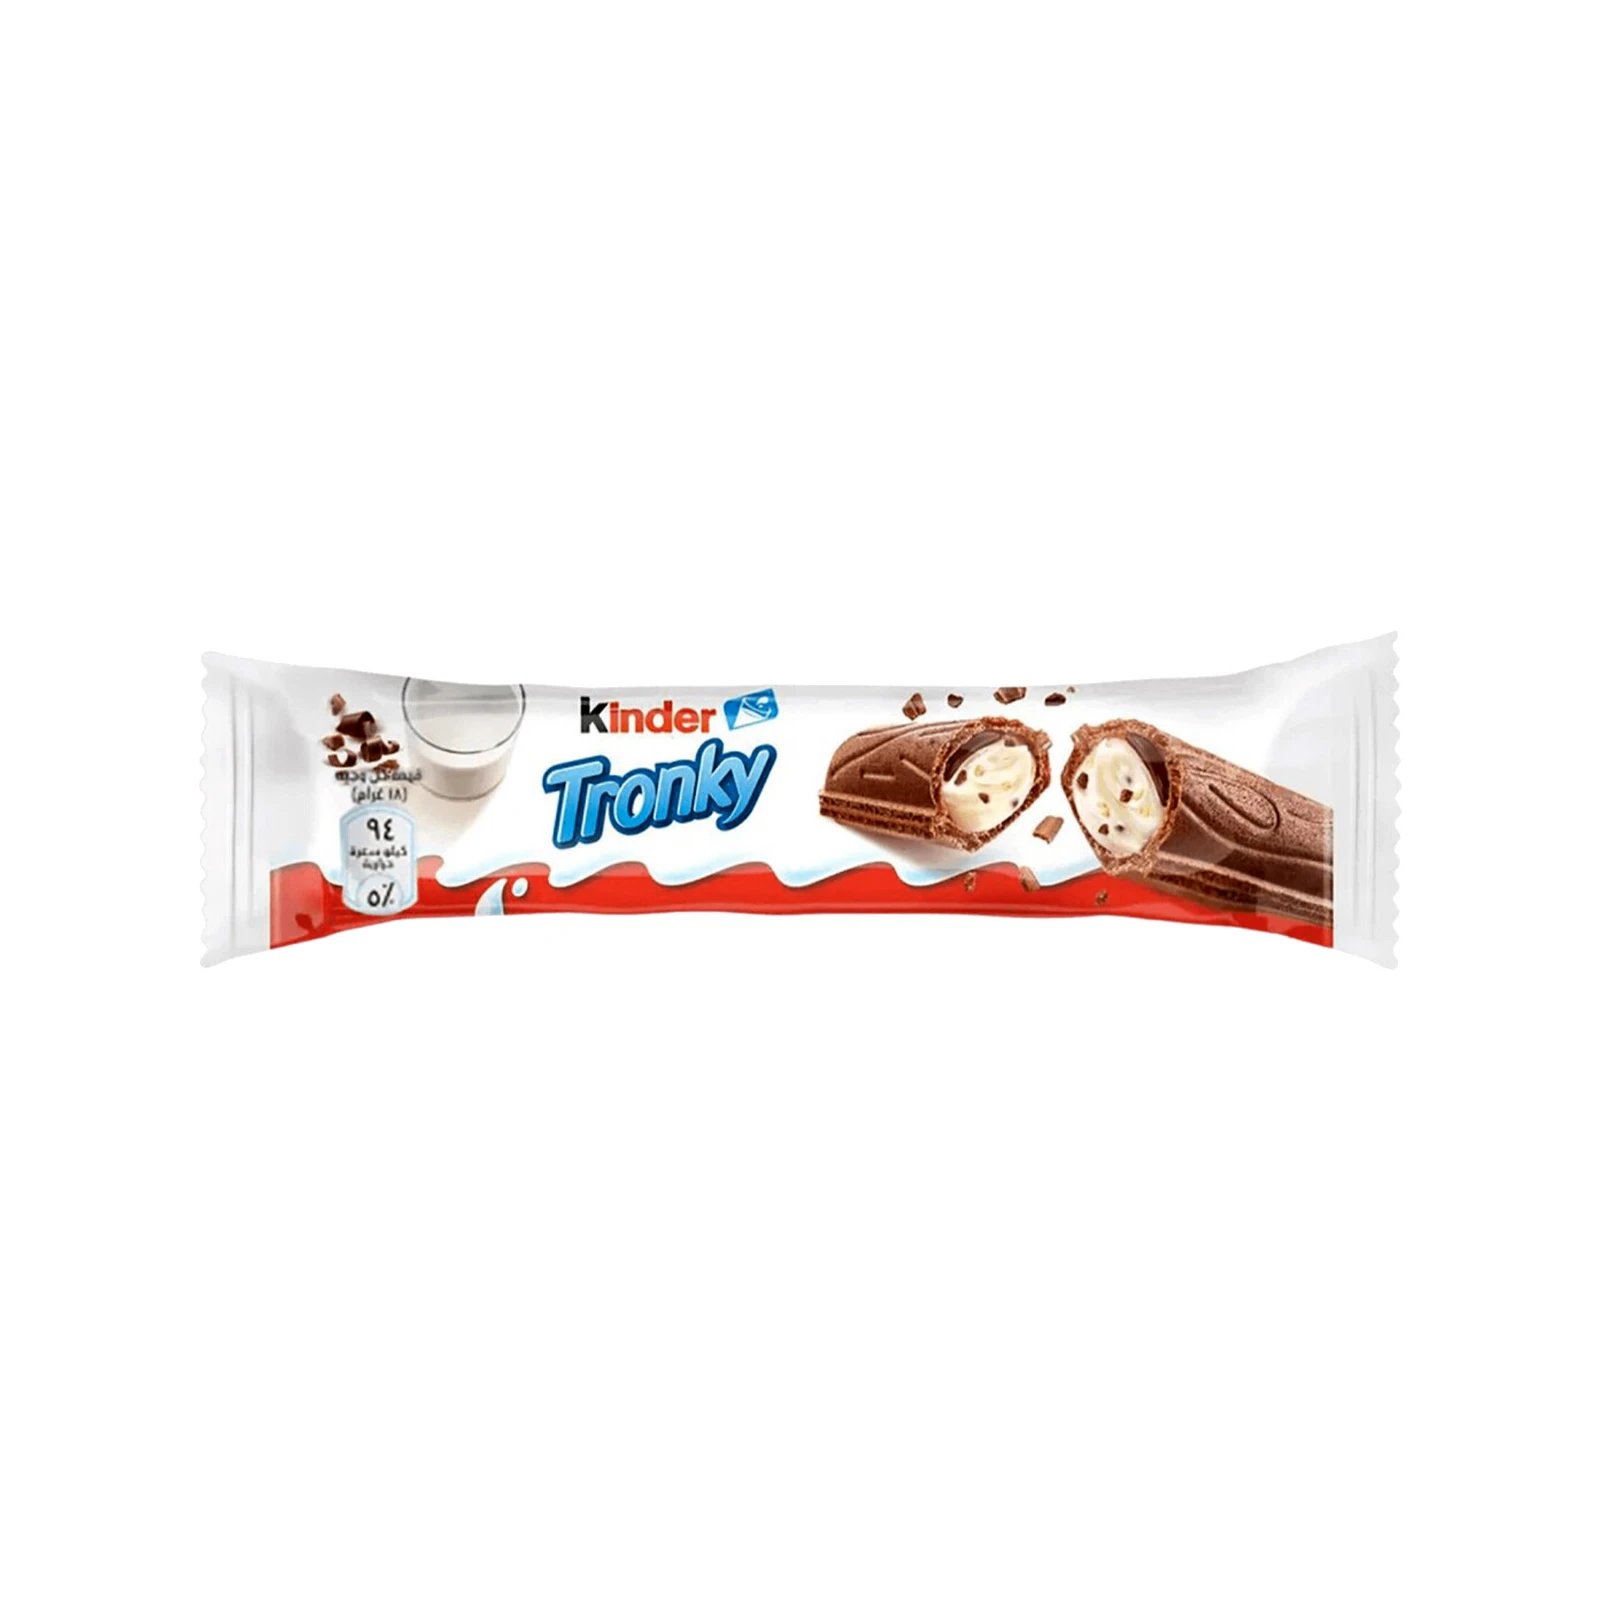 Kinder - Tronky - 90 g | Amerikanische Süßigkeiten kaufen 2